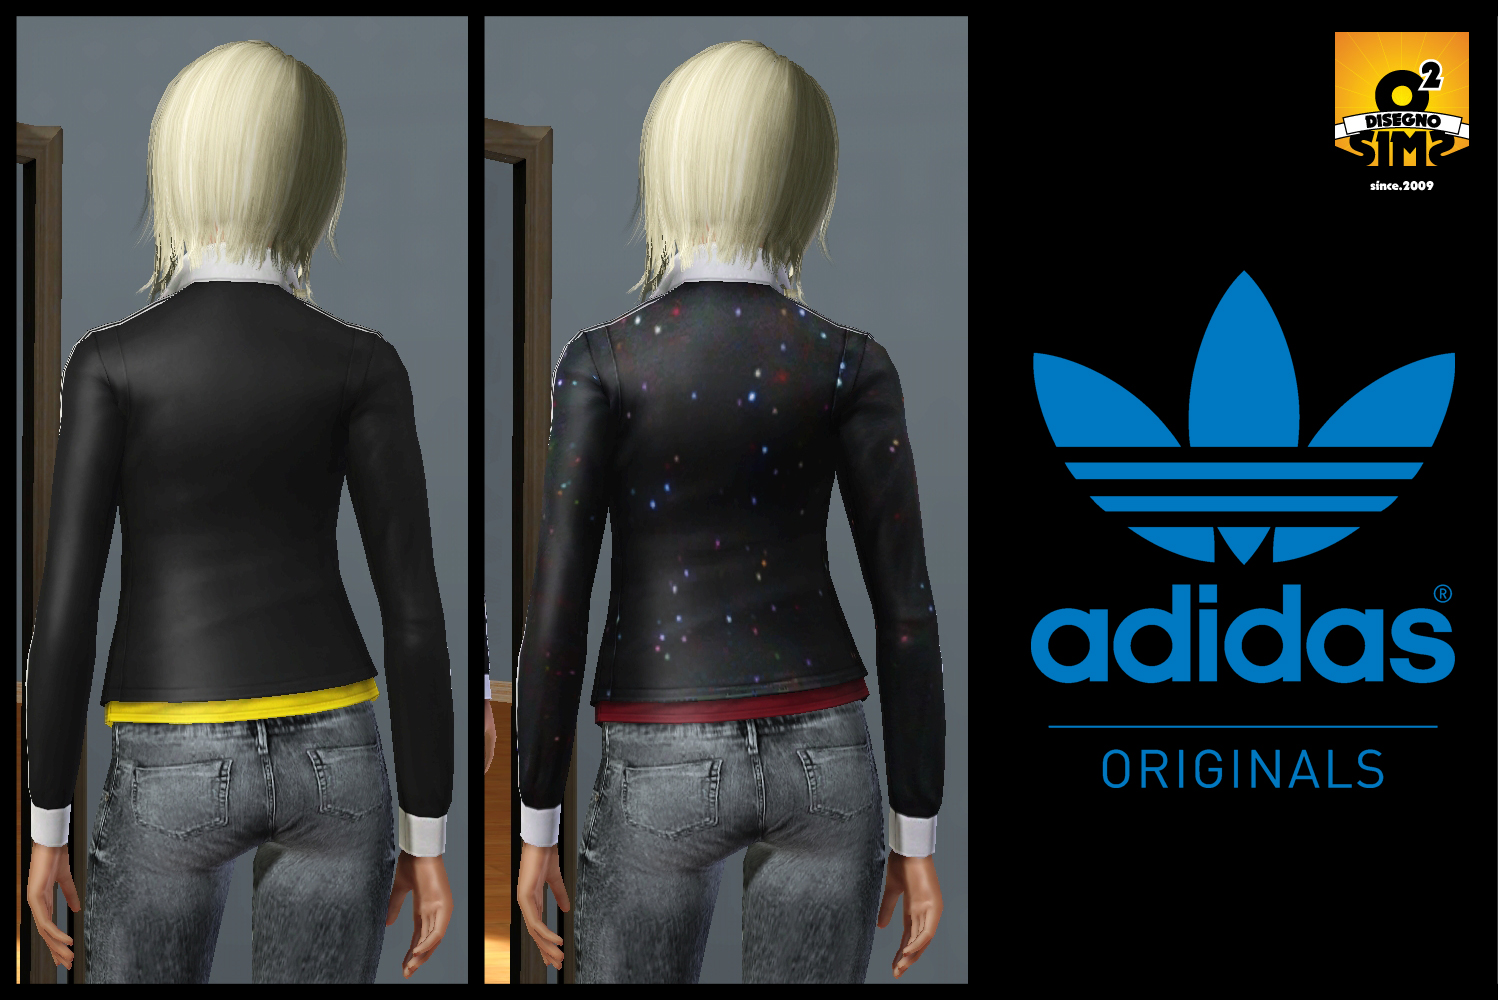 Adidas Original Back 1